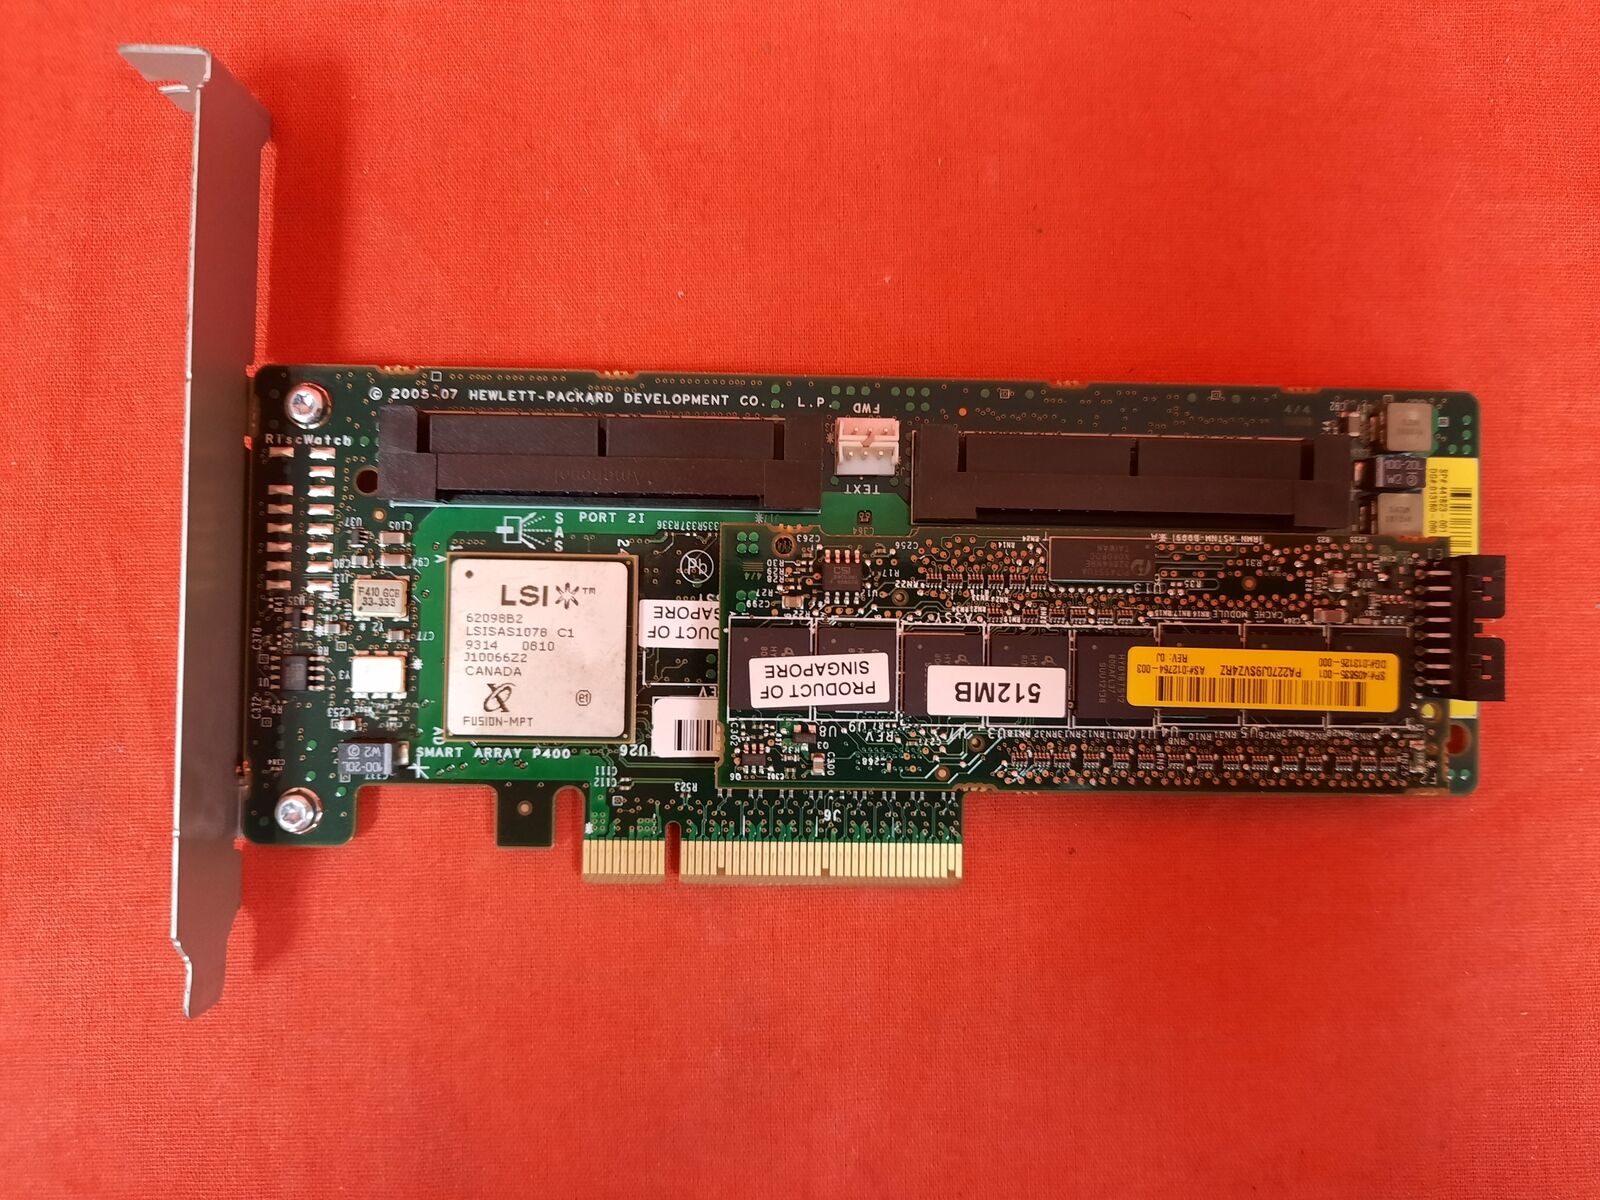 HP 441823-001 Lsi Smart Array P400 512MB SCSI SAS RAID Controller Card 8450